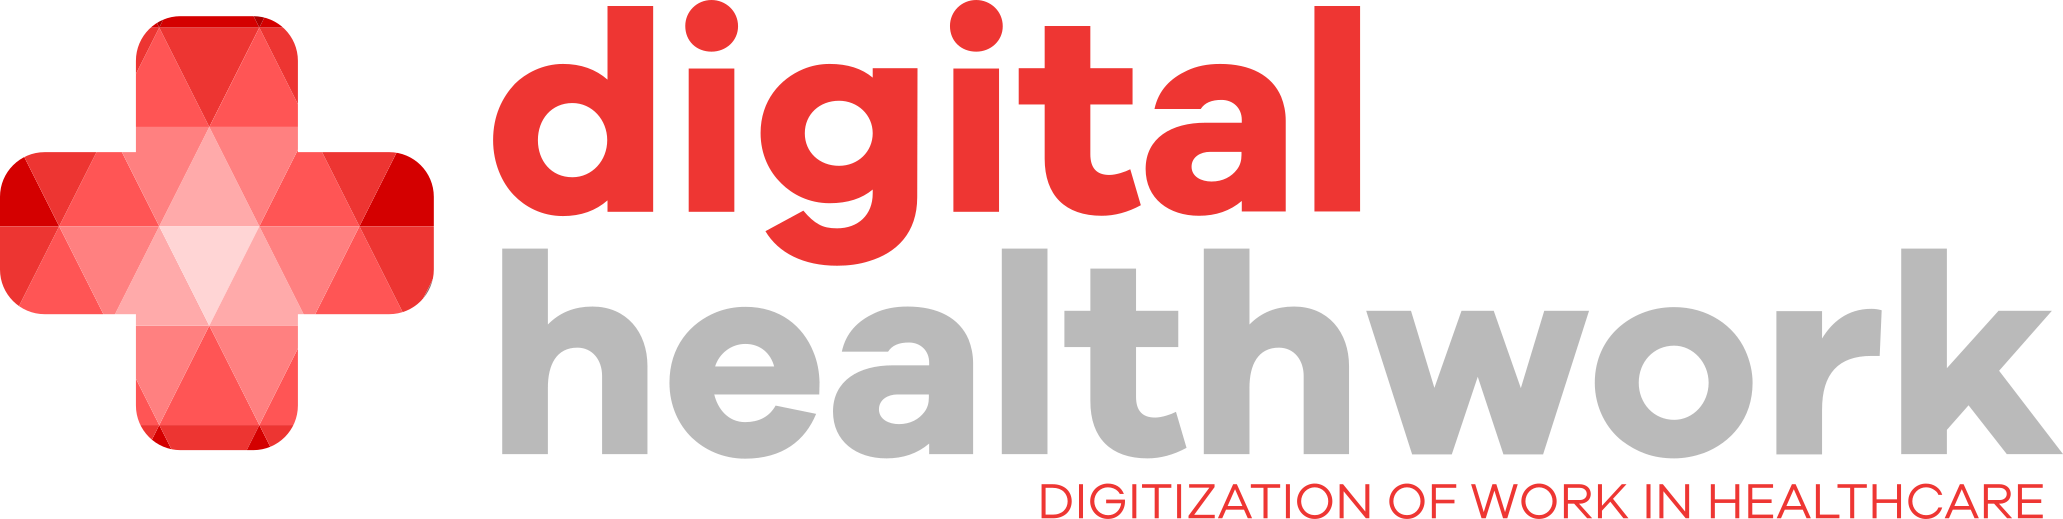 Digital Health Work Logo